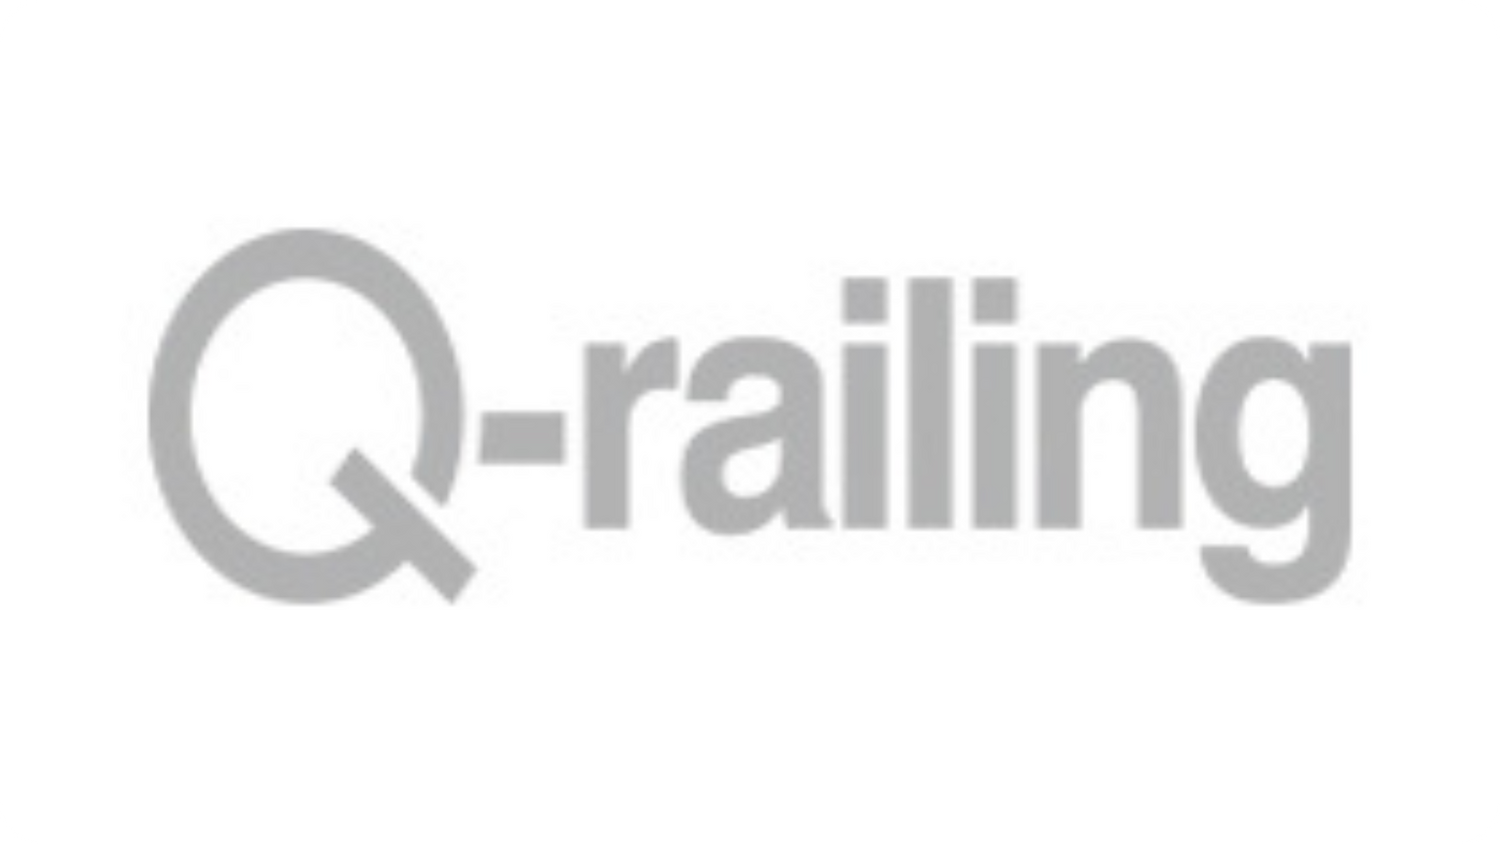 Q-railing Products at Cascade Aqua-Tech